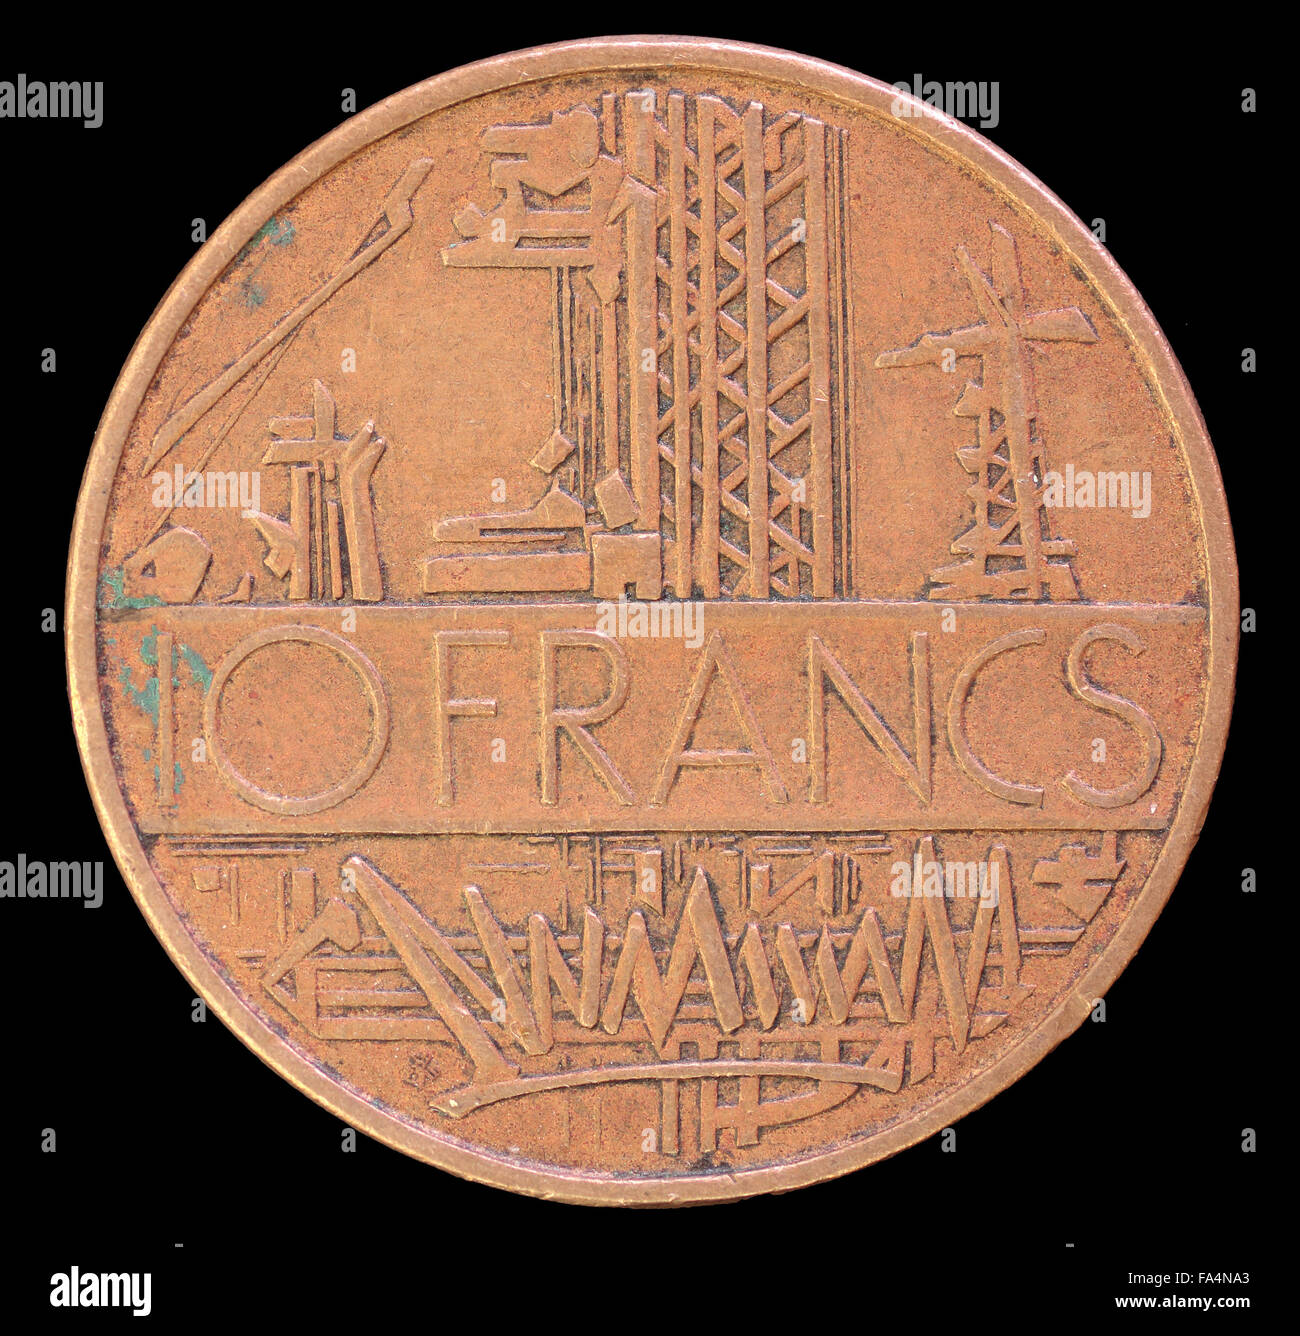 La faccia di coda di 10 franchi, monete emesse dalla Francia nel 1975, raffigurante l'industria in background. Immagine isolata su sfondo nero Foto Stock